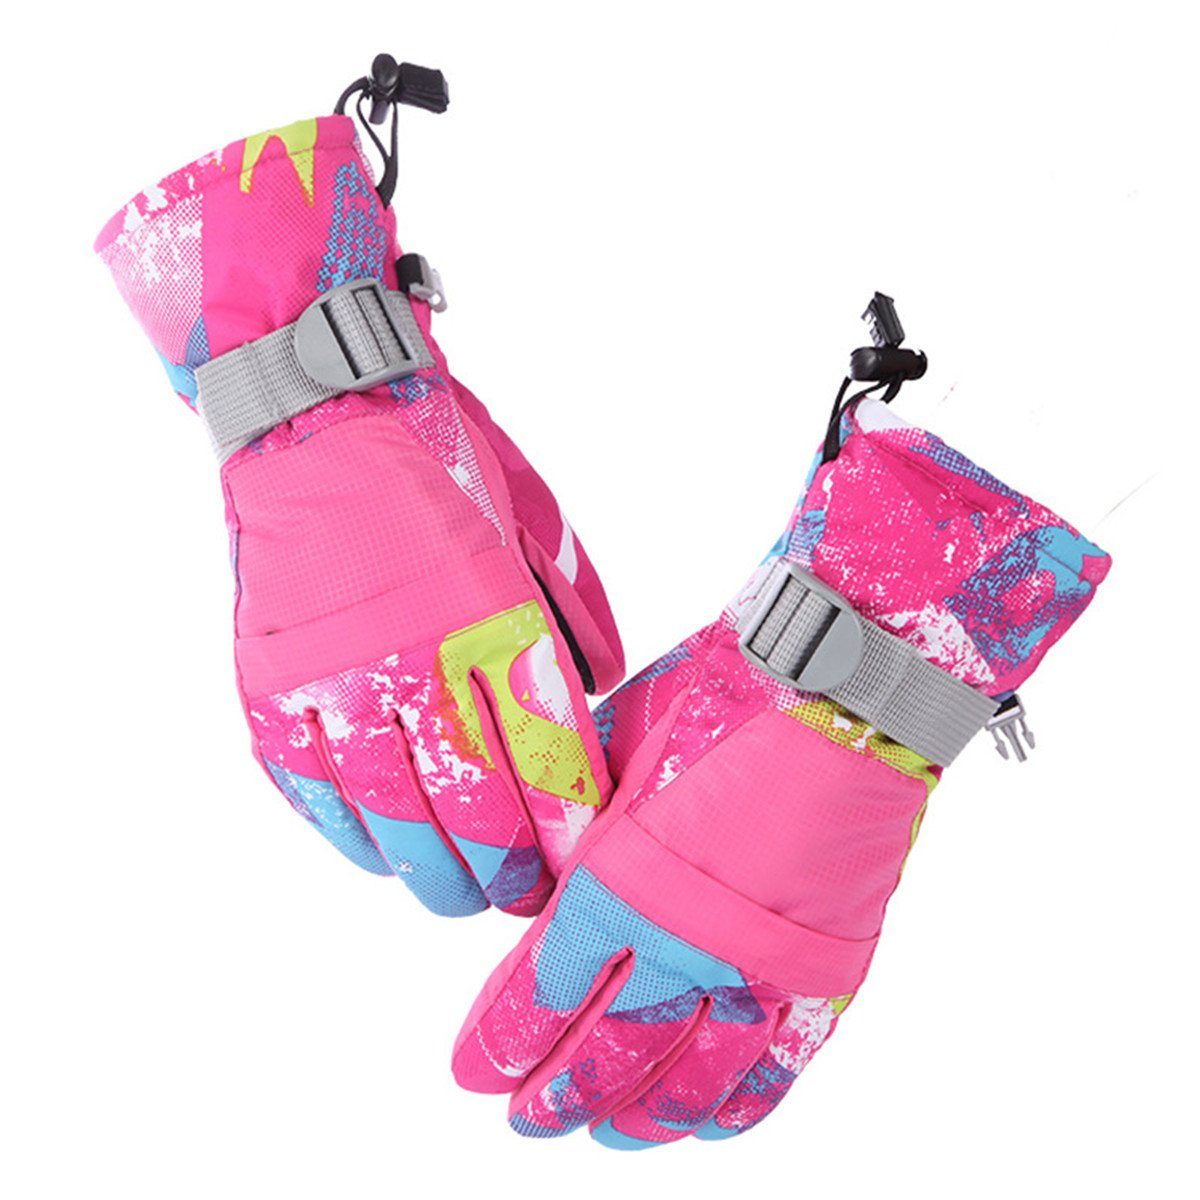 Die Sterne Langlaufhandschuhe Kinder/Männer/Damen Winter-Outdoor-Sport-Snowboard-Handschuhe rosarot | Langlaufhandschuhe